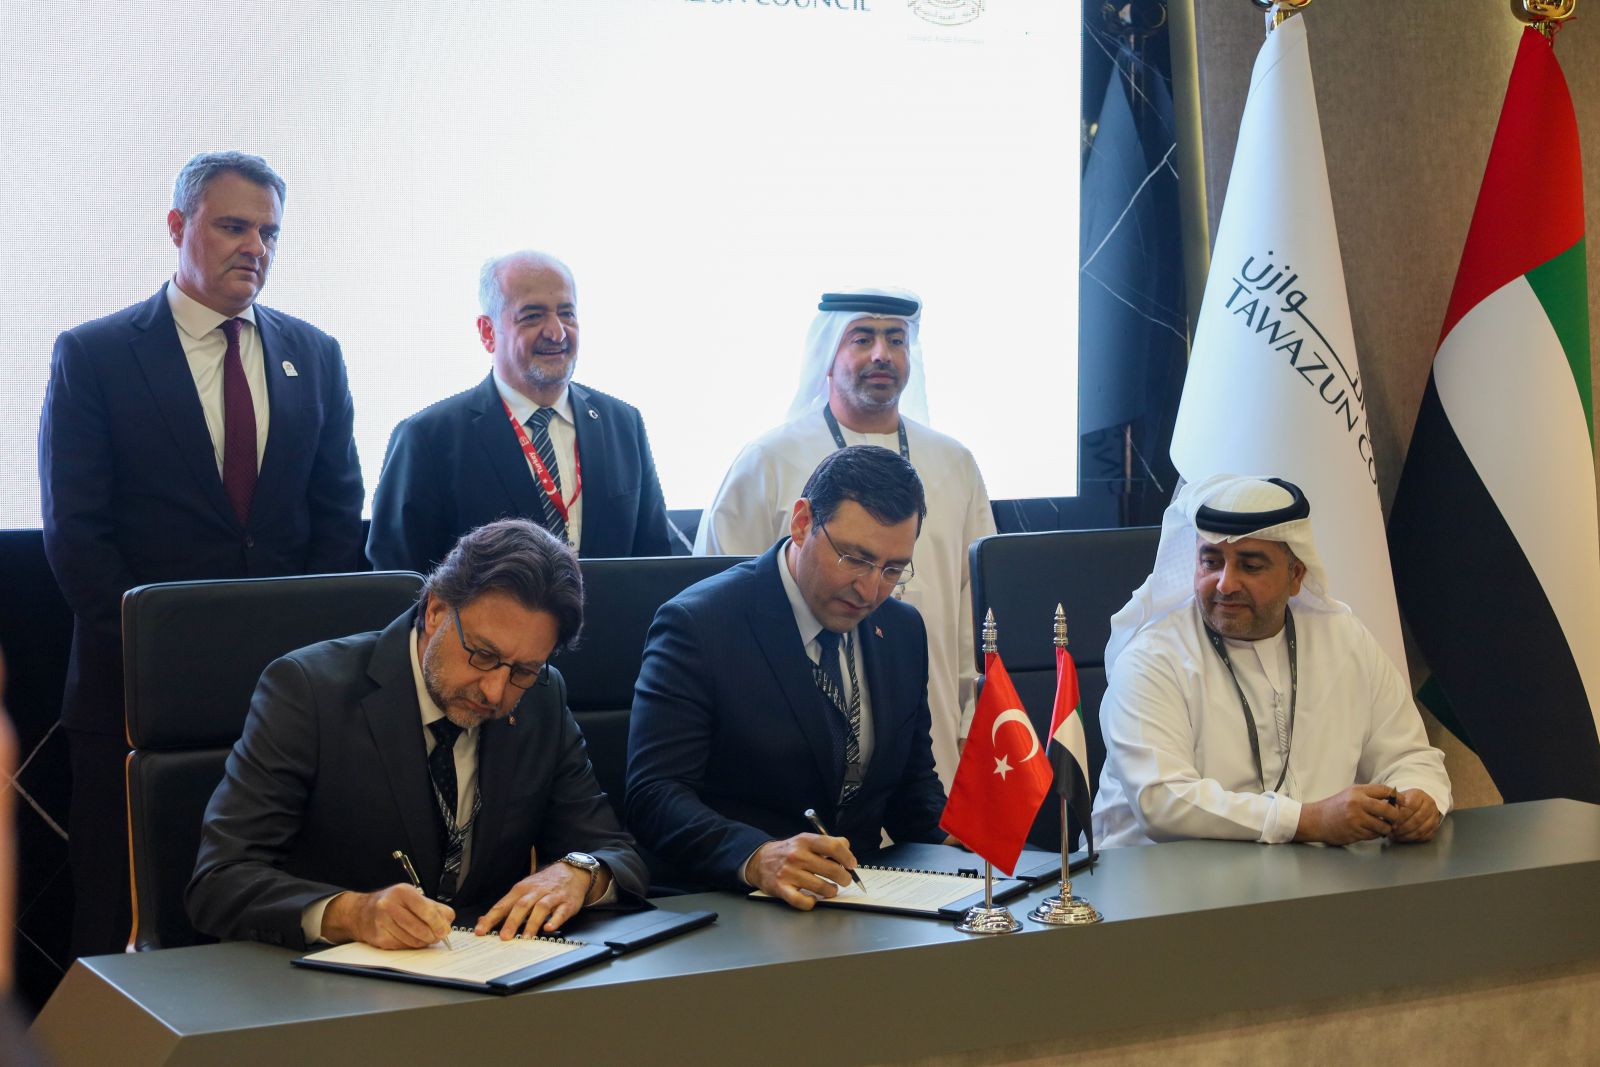 مجلس التوازن و”روكيتسان” التركية يوقعان اتفاقية للتطوير المشترك لأنظمة وتقنيات الصواريخ المتقدمة